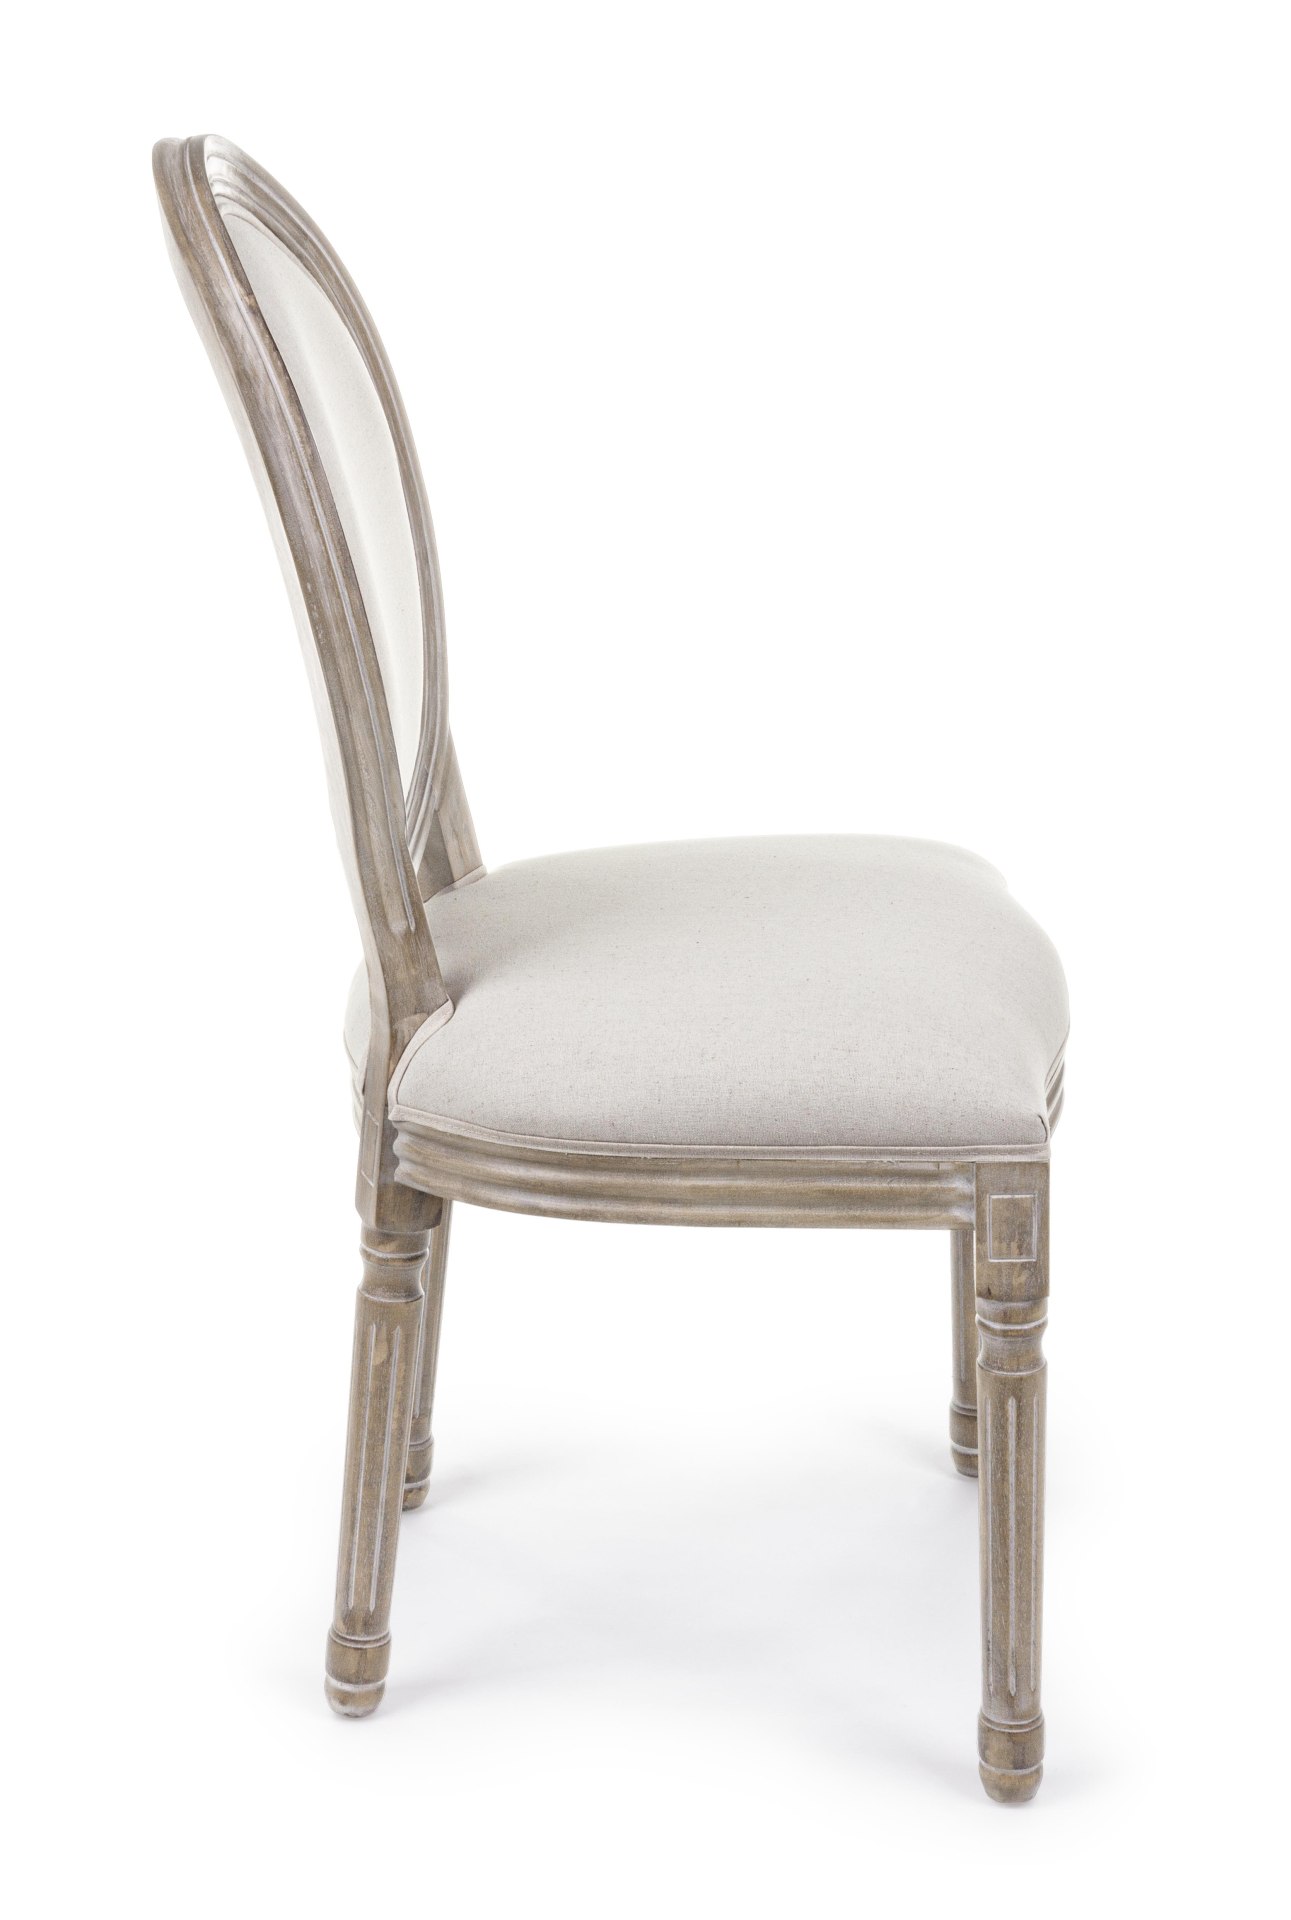 Der Stuhl Mathilde überzeugt mit seinem klassischem Design gefertigt wurde der Stuhl aus Birkenholz, welches natürlich gehalten ist. Die Sitz- und Rückenfläche ist aus einem Stoff-Bezug, welcher einen weißen Farbton besitzt und ein Mix aus Baumwolle und L